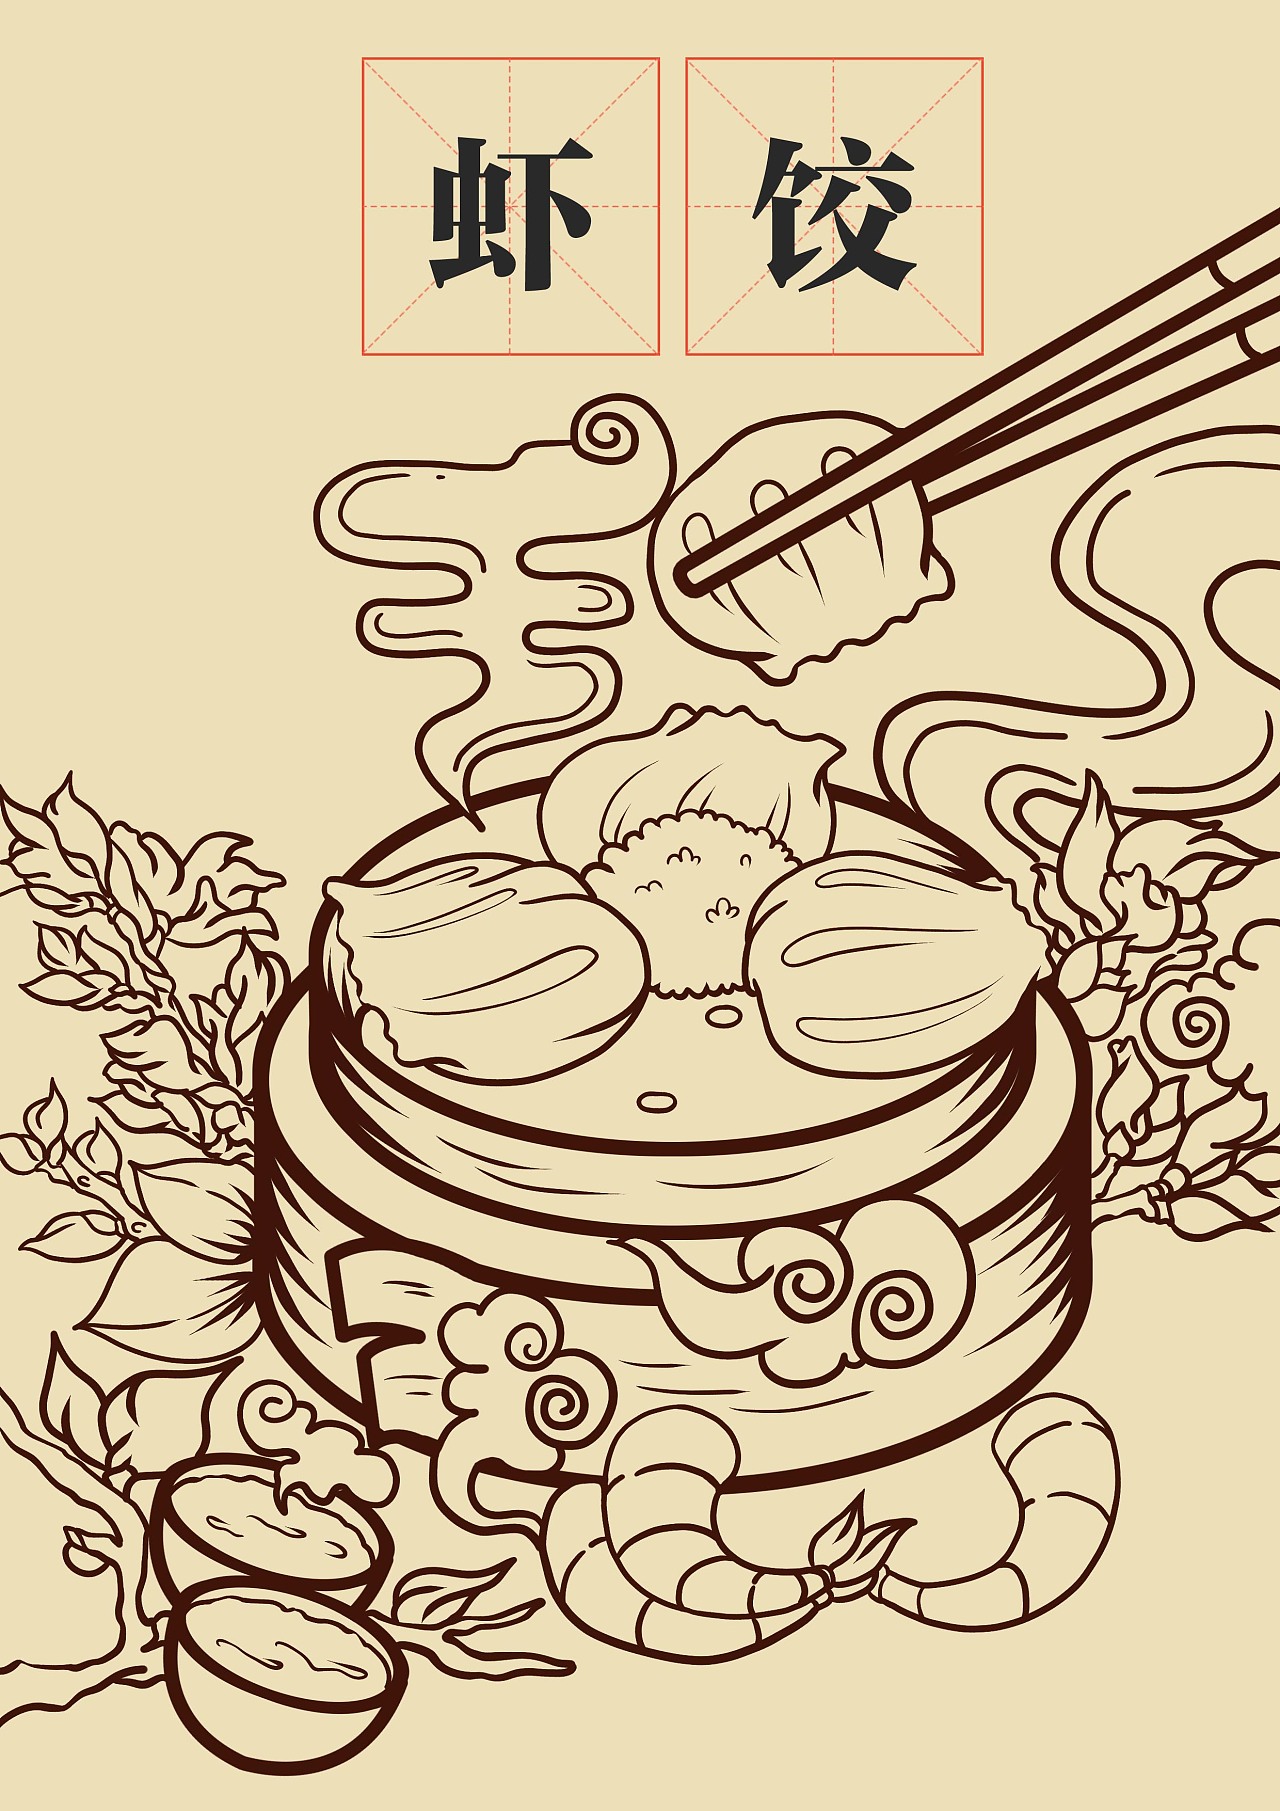 从小就喜欢广府文化,特别广府文化中的早茶文化.